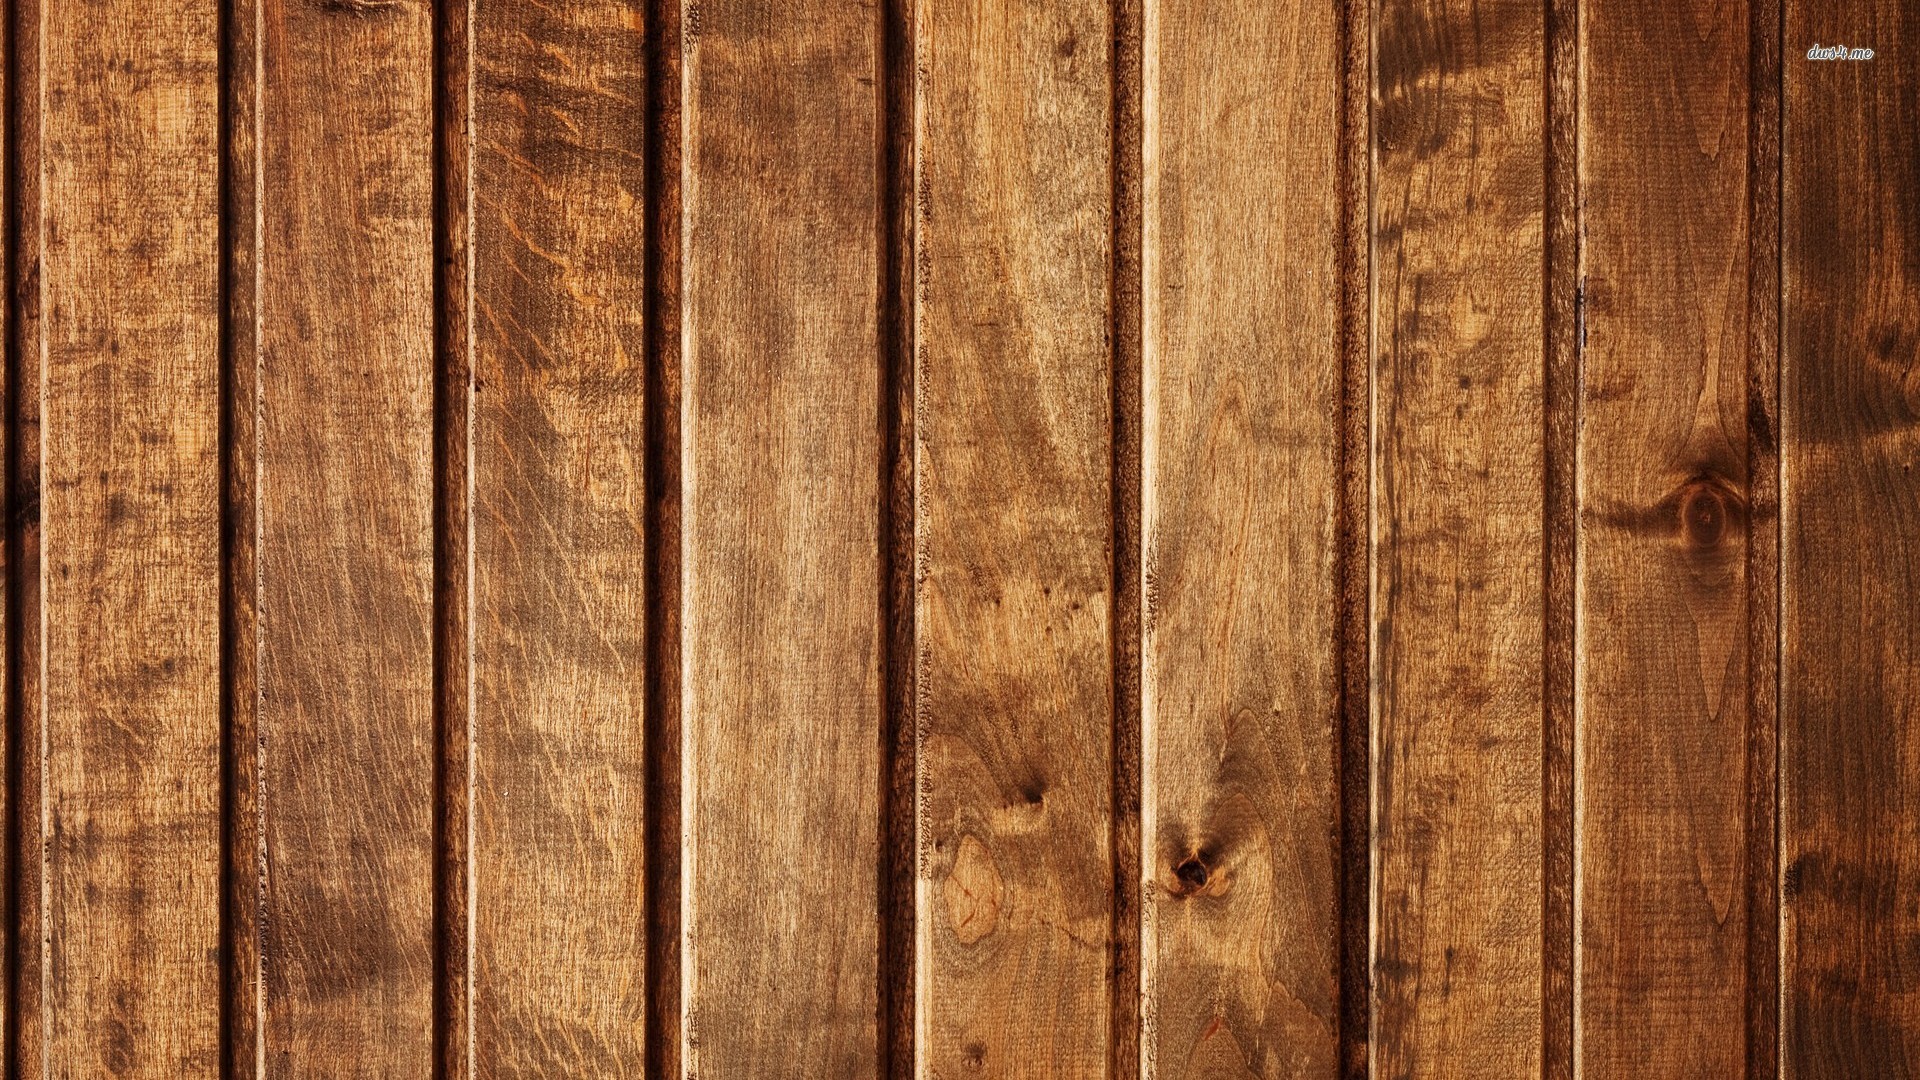 Hình nền gỗ với độ hoàn thiện mịn màng sẽ mang đến cho bạn sự thoải mái và dễ chịu khi sử dụng. Xem hình nền gỗ để khám phá những mẫu hoa văn độc đáo và đa dạng.